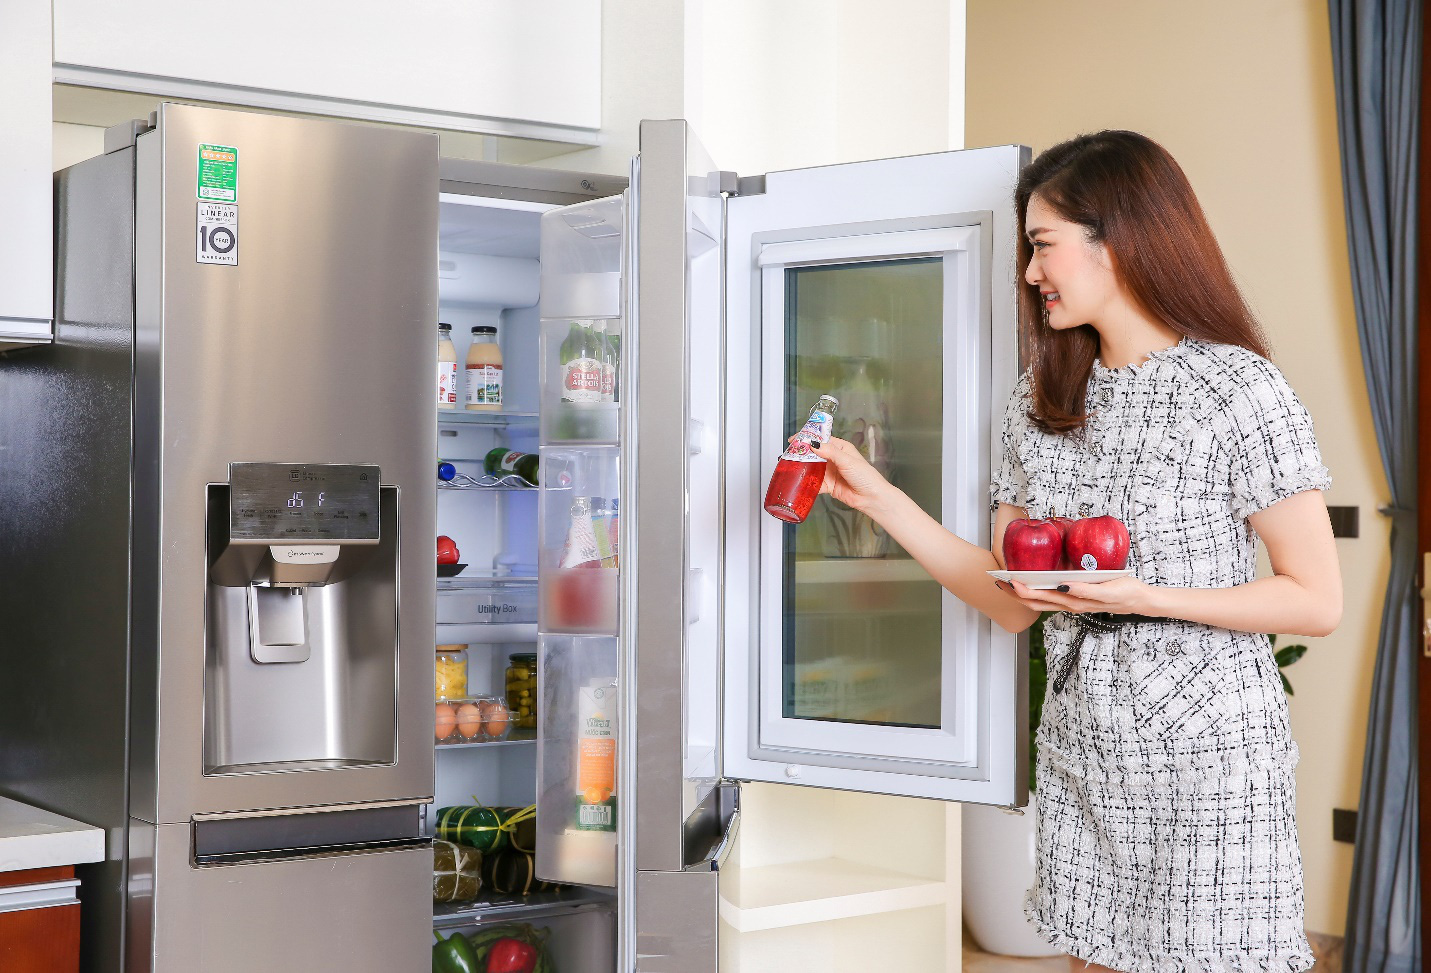 Xu hướng chọn tủ lạnh kháng khuẩn để lưu trữ thực phẩm tươi ngon, an toàn trong mùa dịch - Ảnh 1.